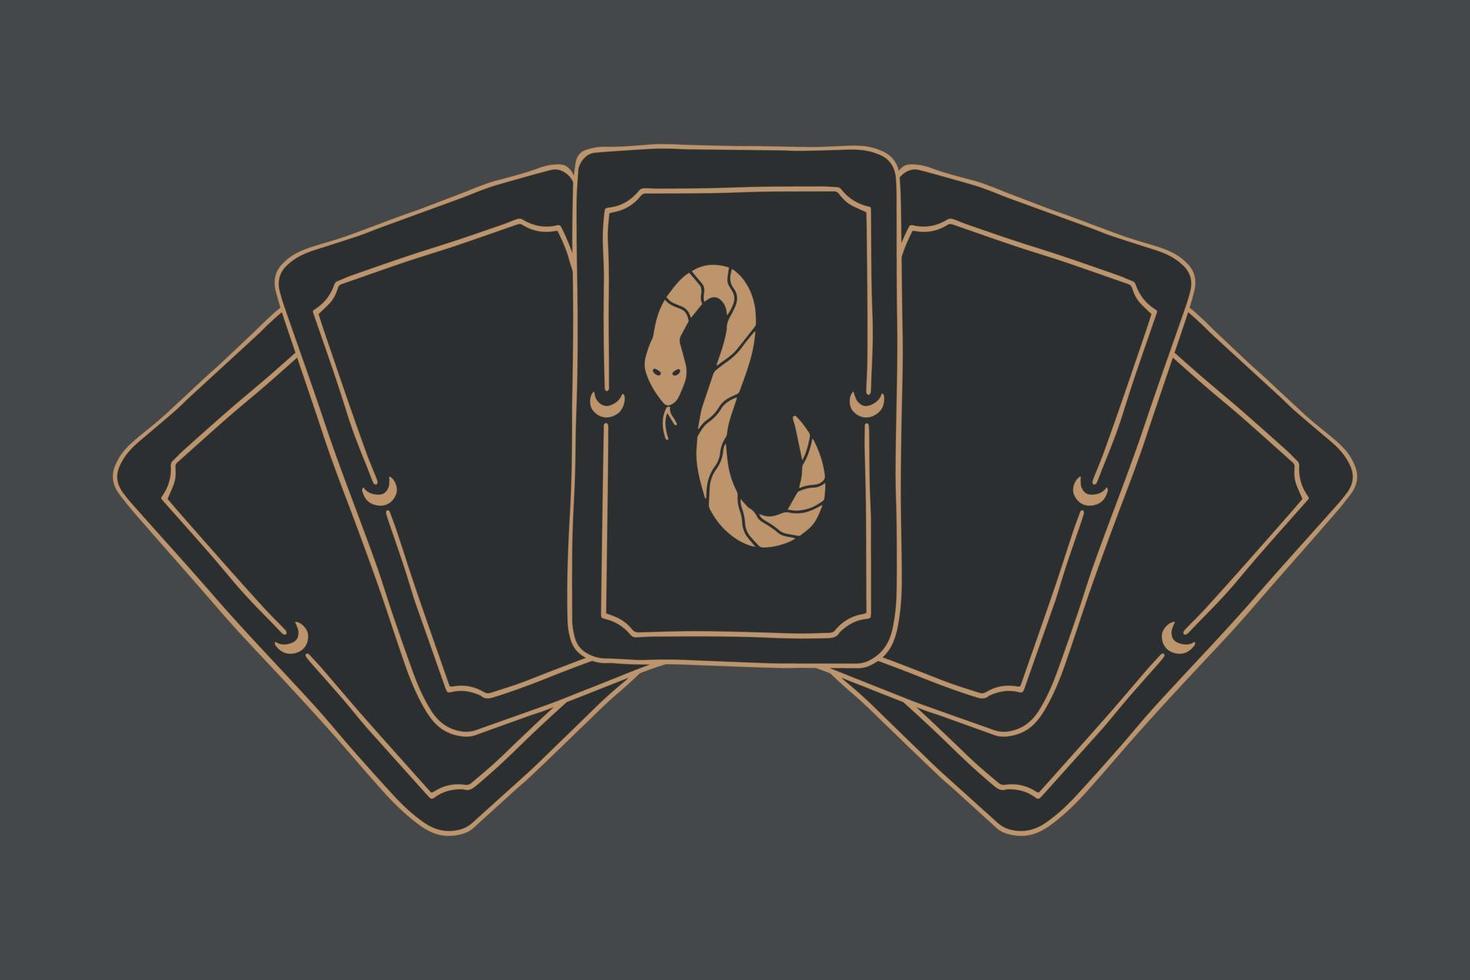 fond de vecteur de jeu de tarot magique avec serpent. concept occulte et divinatoire.